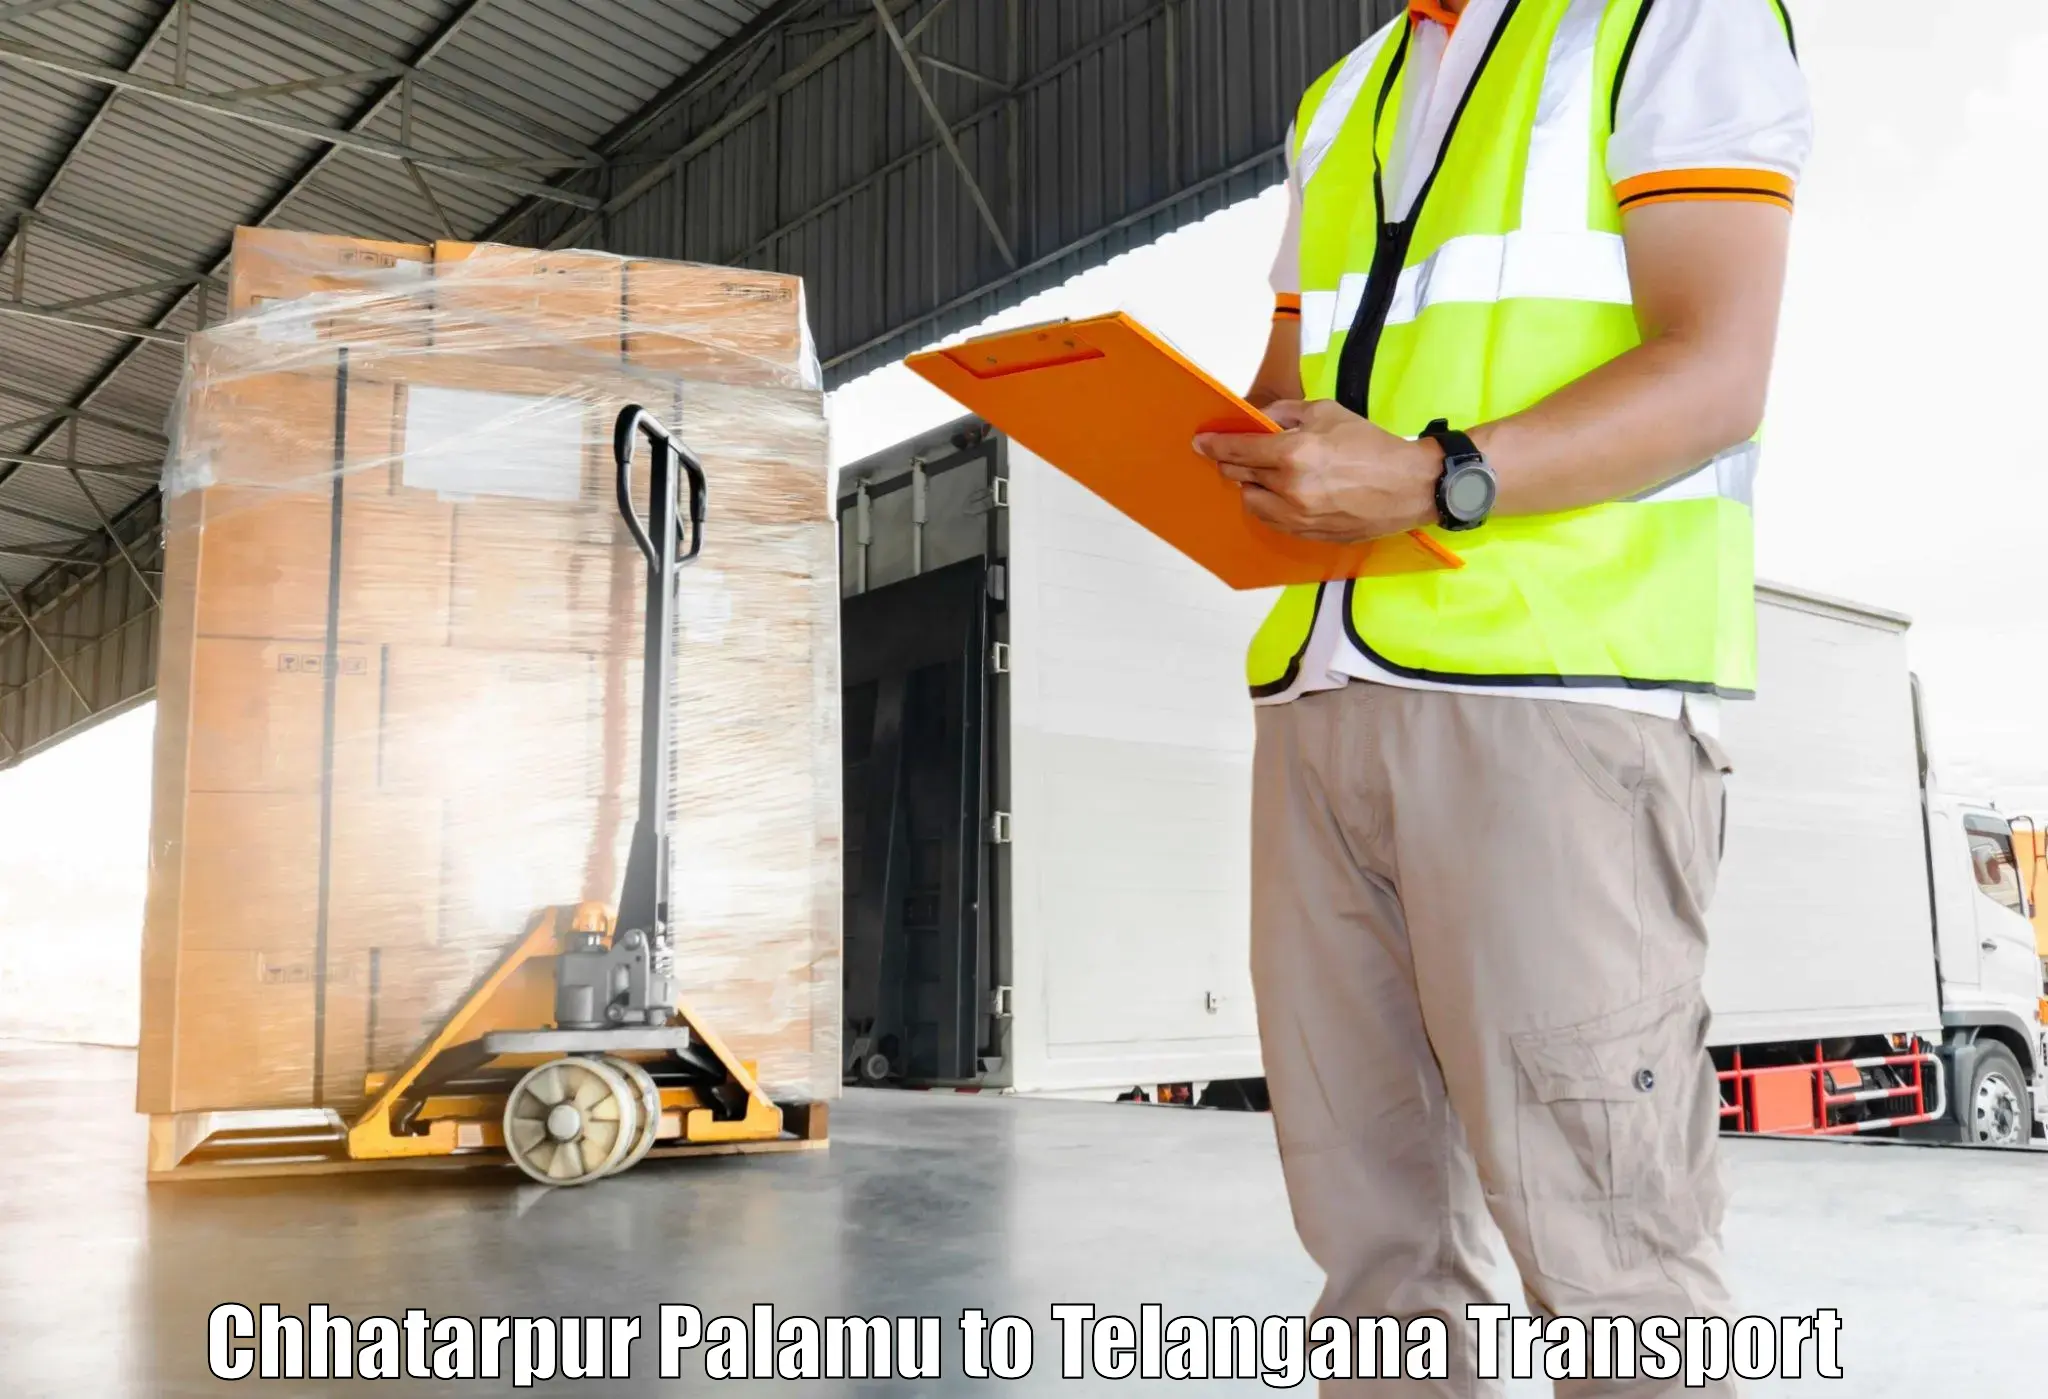 Daily parcel service transport Chhatarpur Palamu to Marikal